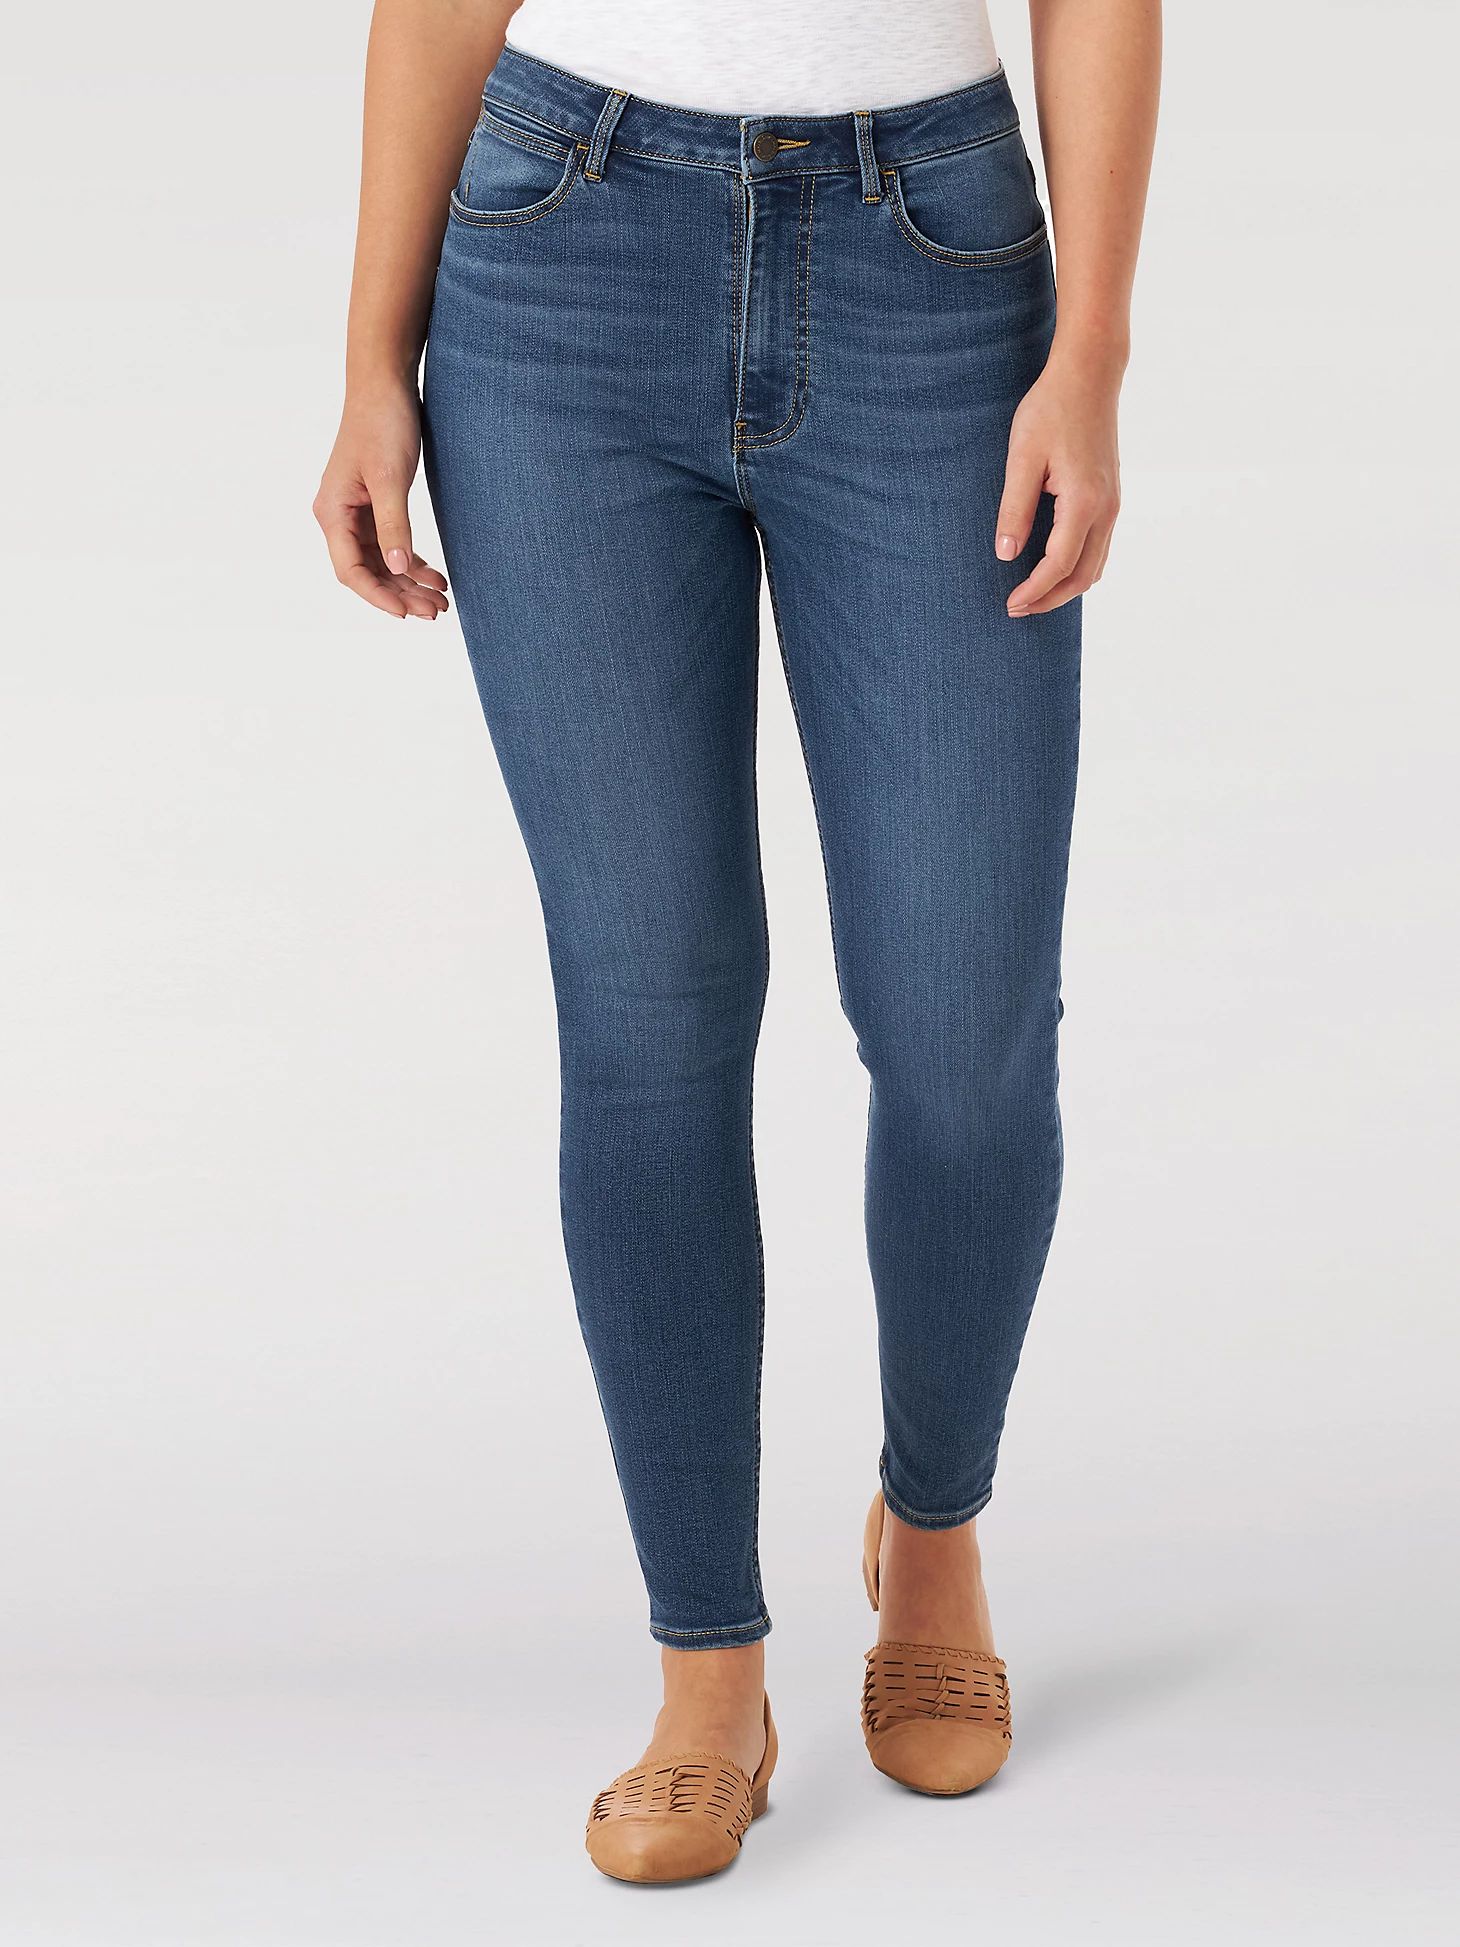 Women's Wrangler® High Rise Unforgettable Skinny Jean in Marina | Wrangler